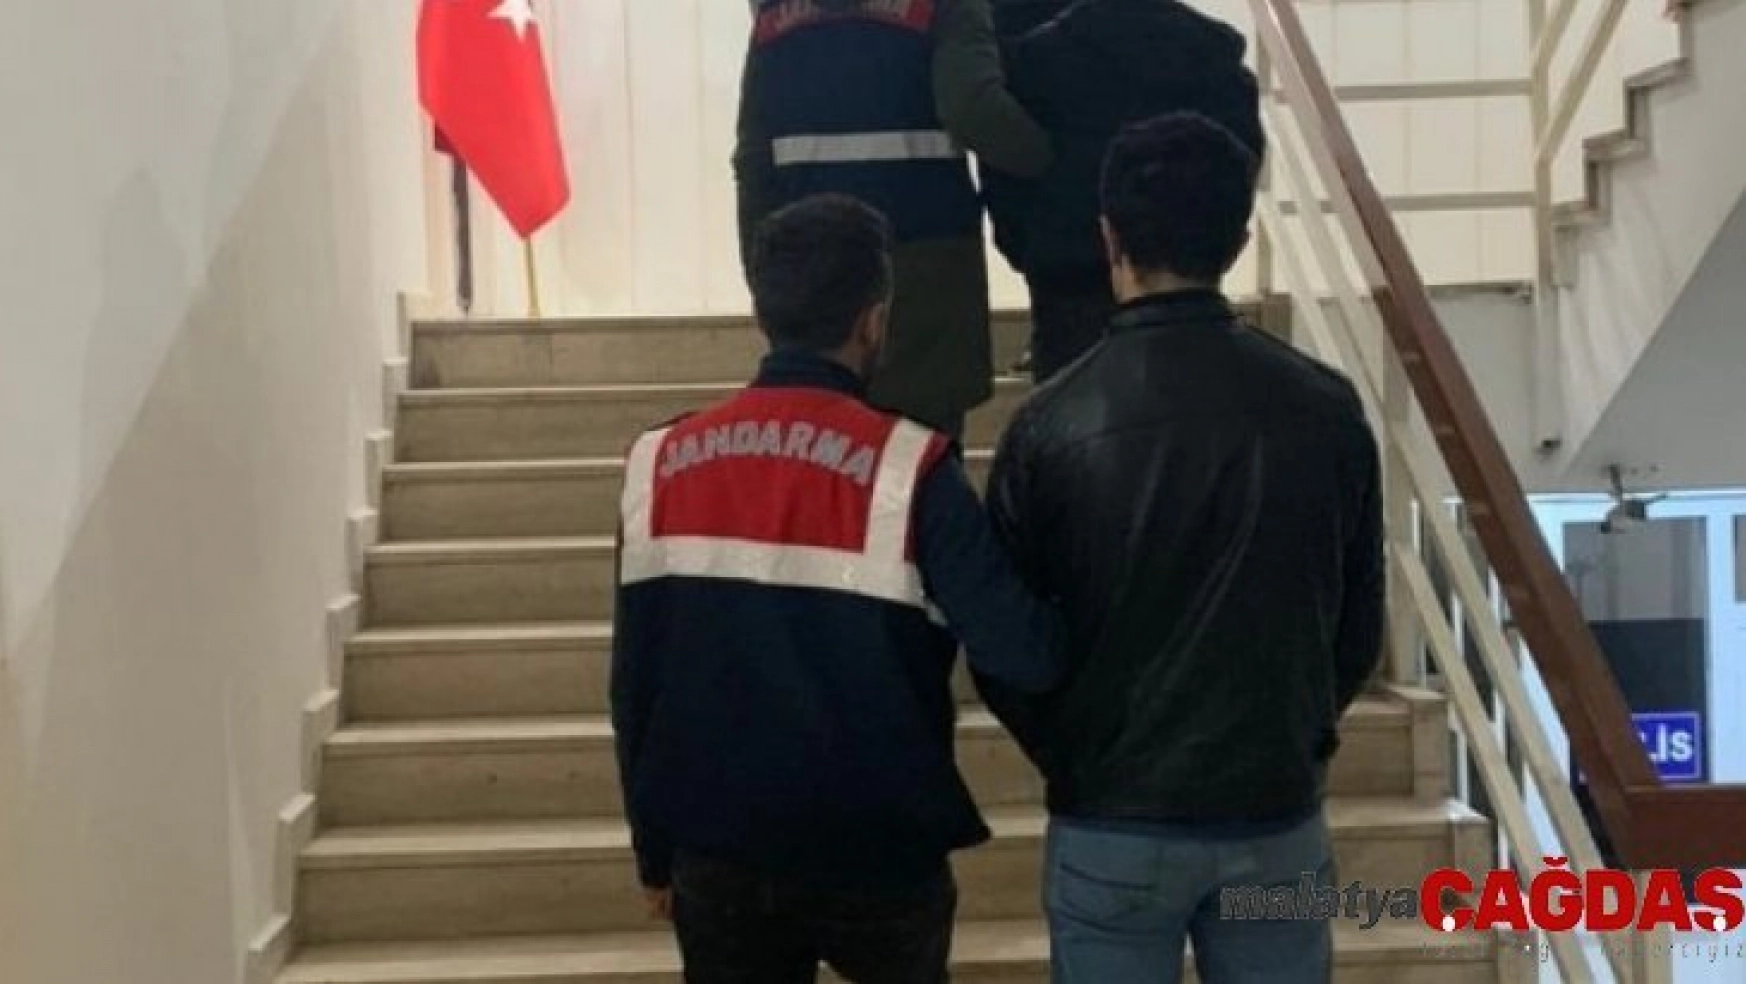 Iğdır'da uyuşturucu operasyonu: 3 tutuklama